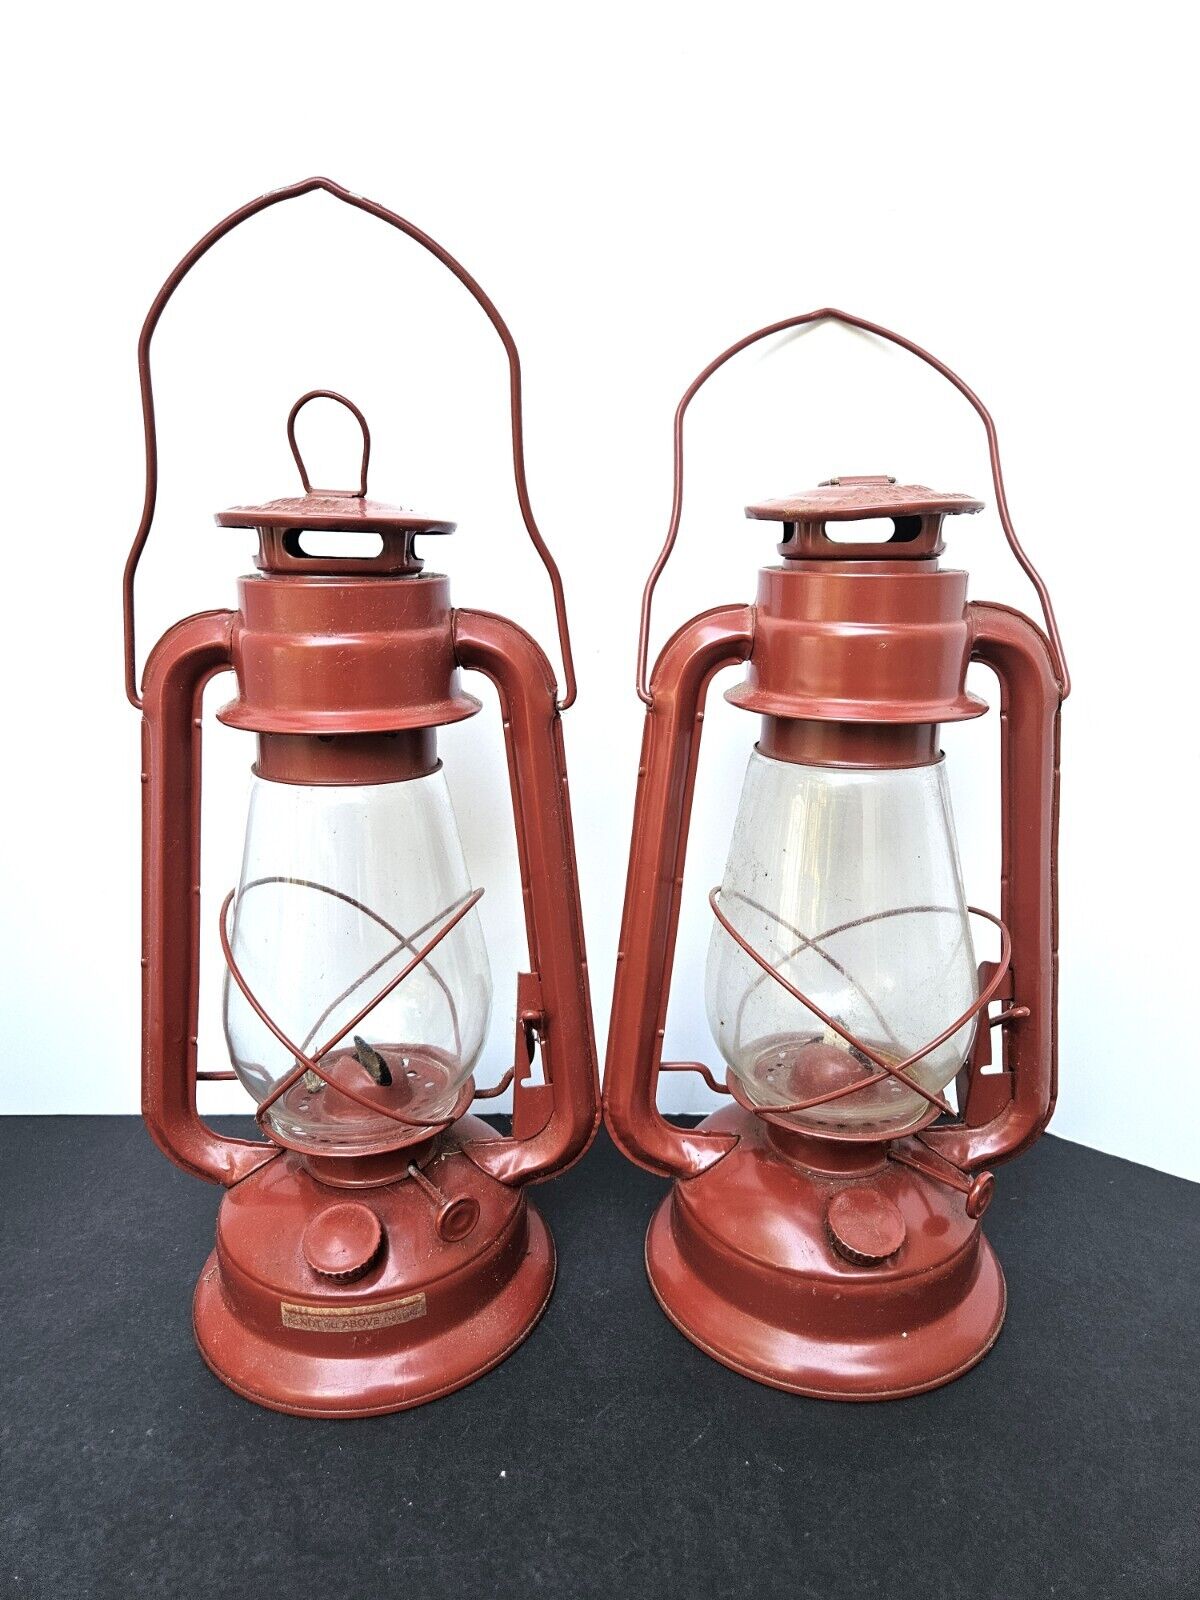 Pair of Red Kerosene Hurricane Lanterns Made In China